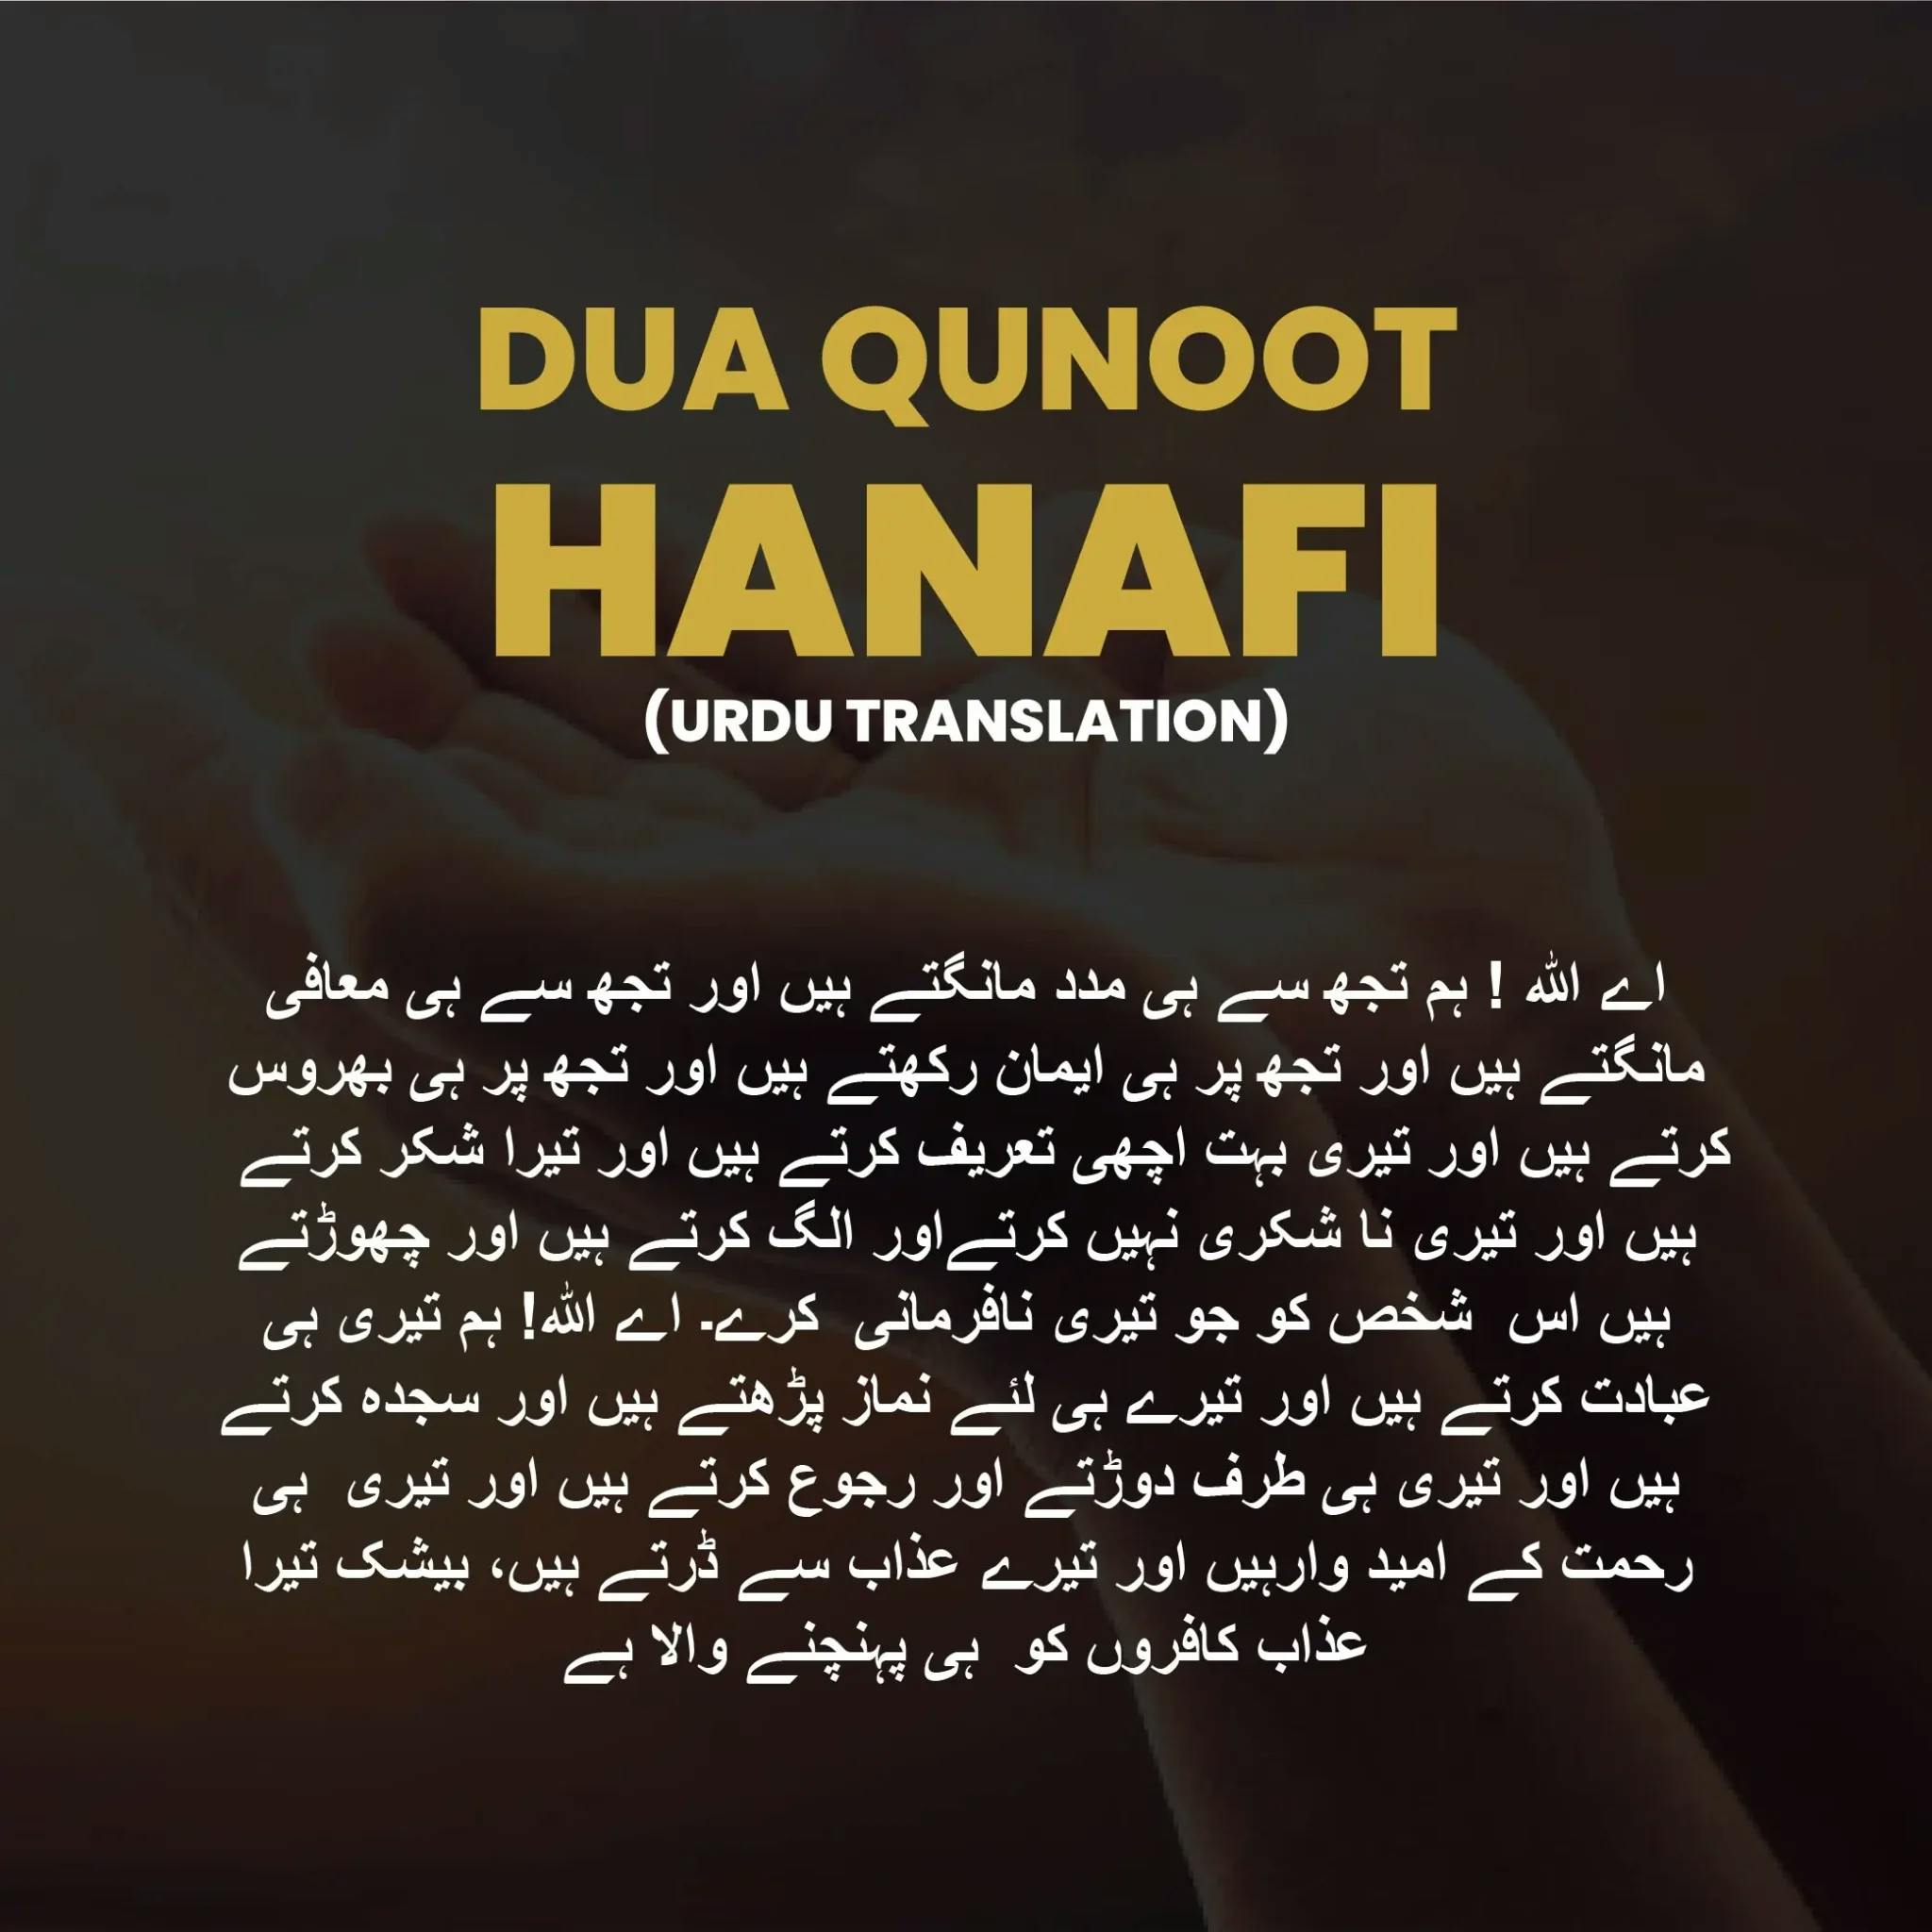 dua qunoot translation hanafi urdu translation 